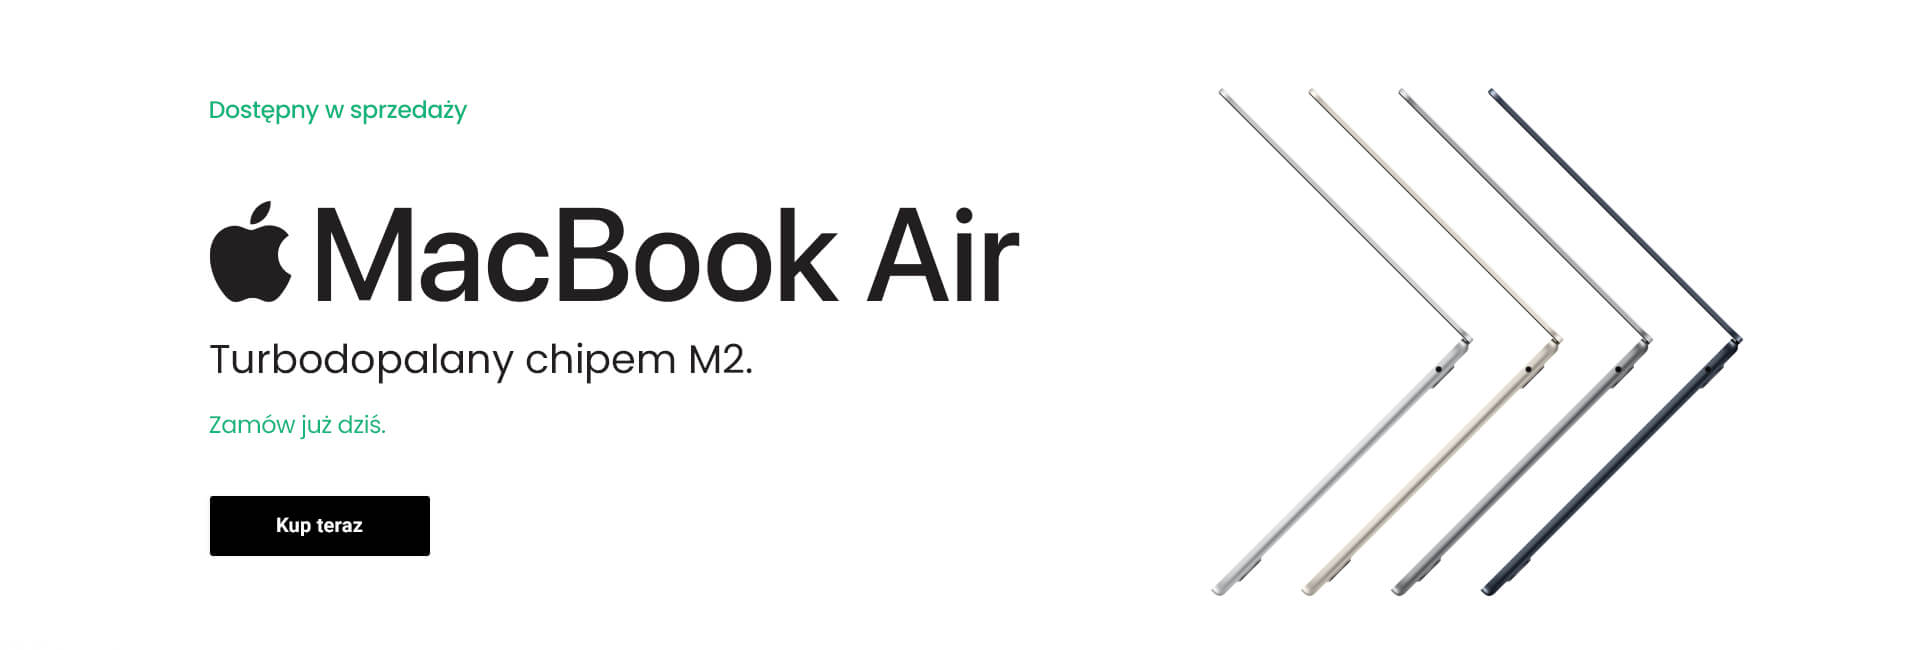 MacBook Air z chipem M2 już dostępny w sprzedaży